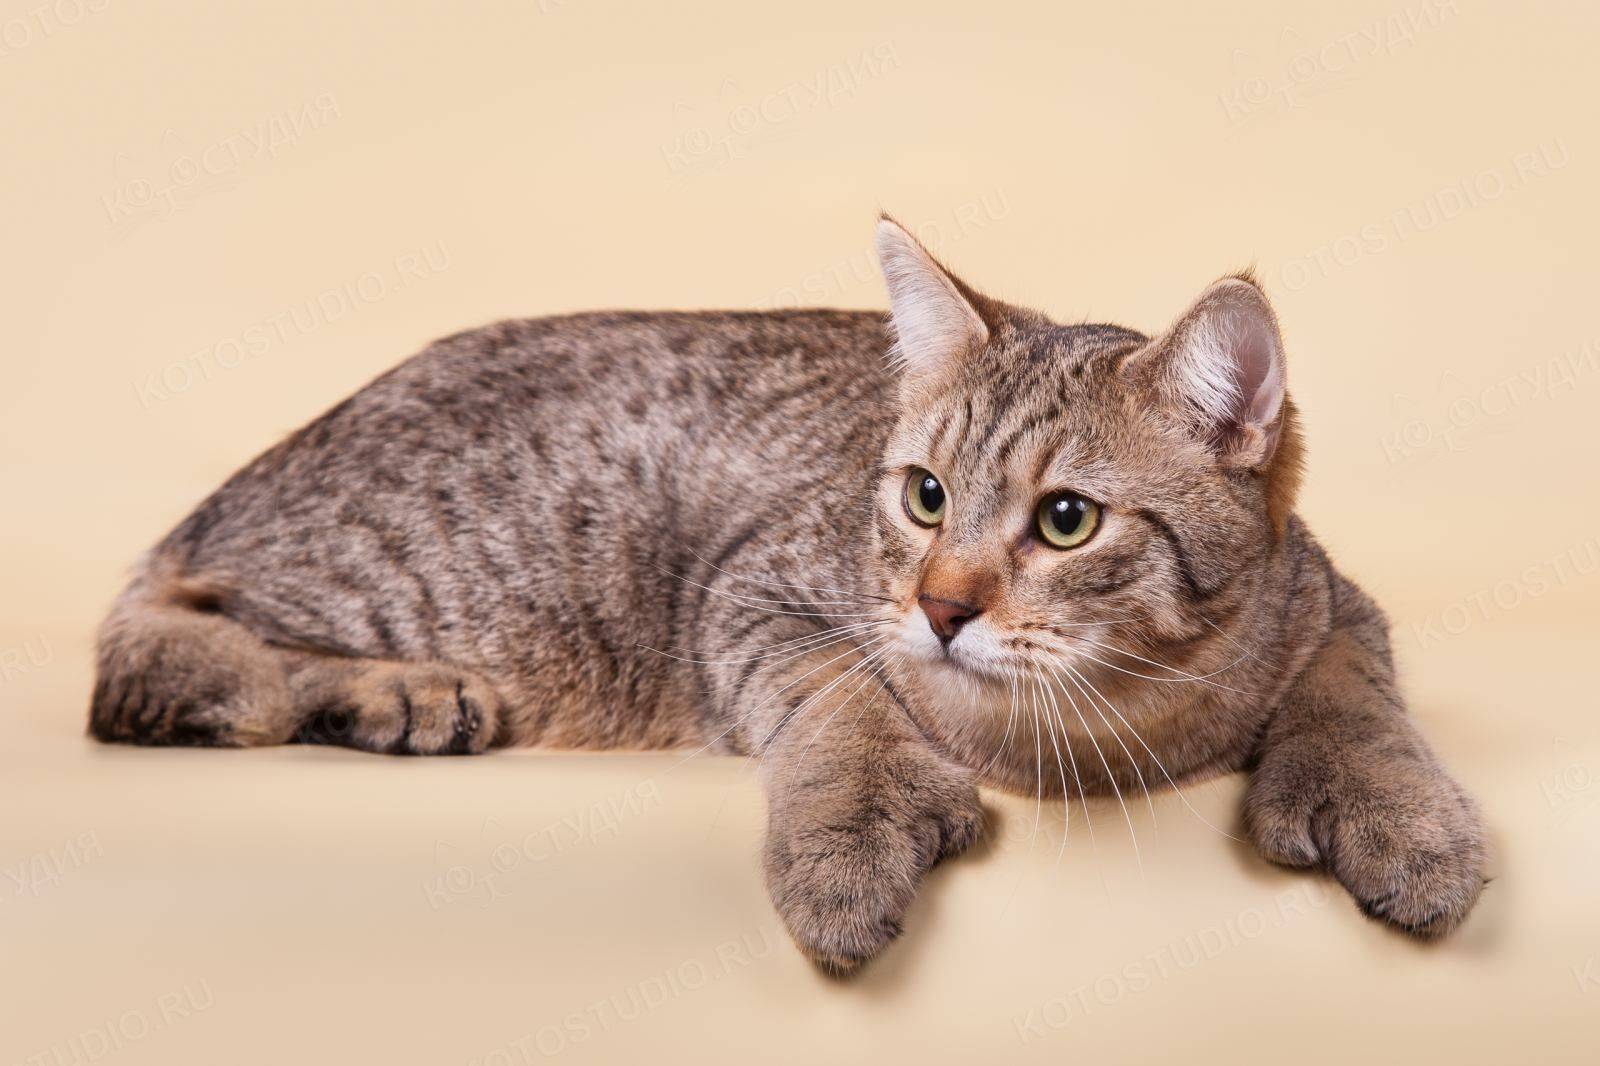 Кошки эльф и двэльф: в чём сходства и различия родственных пород велюровых кошек.